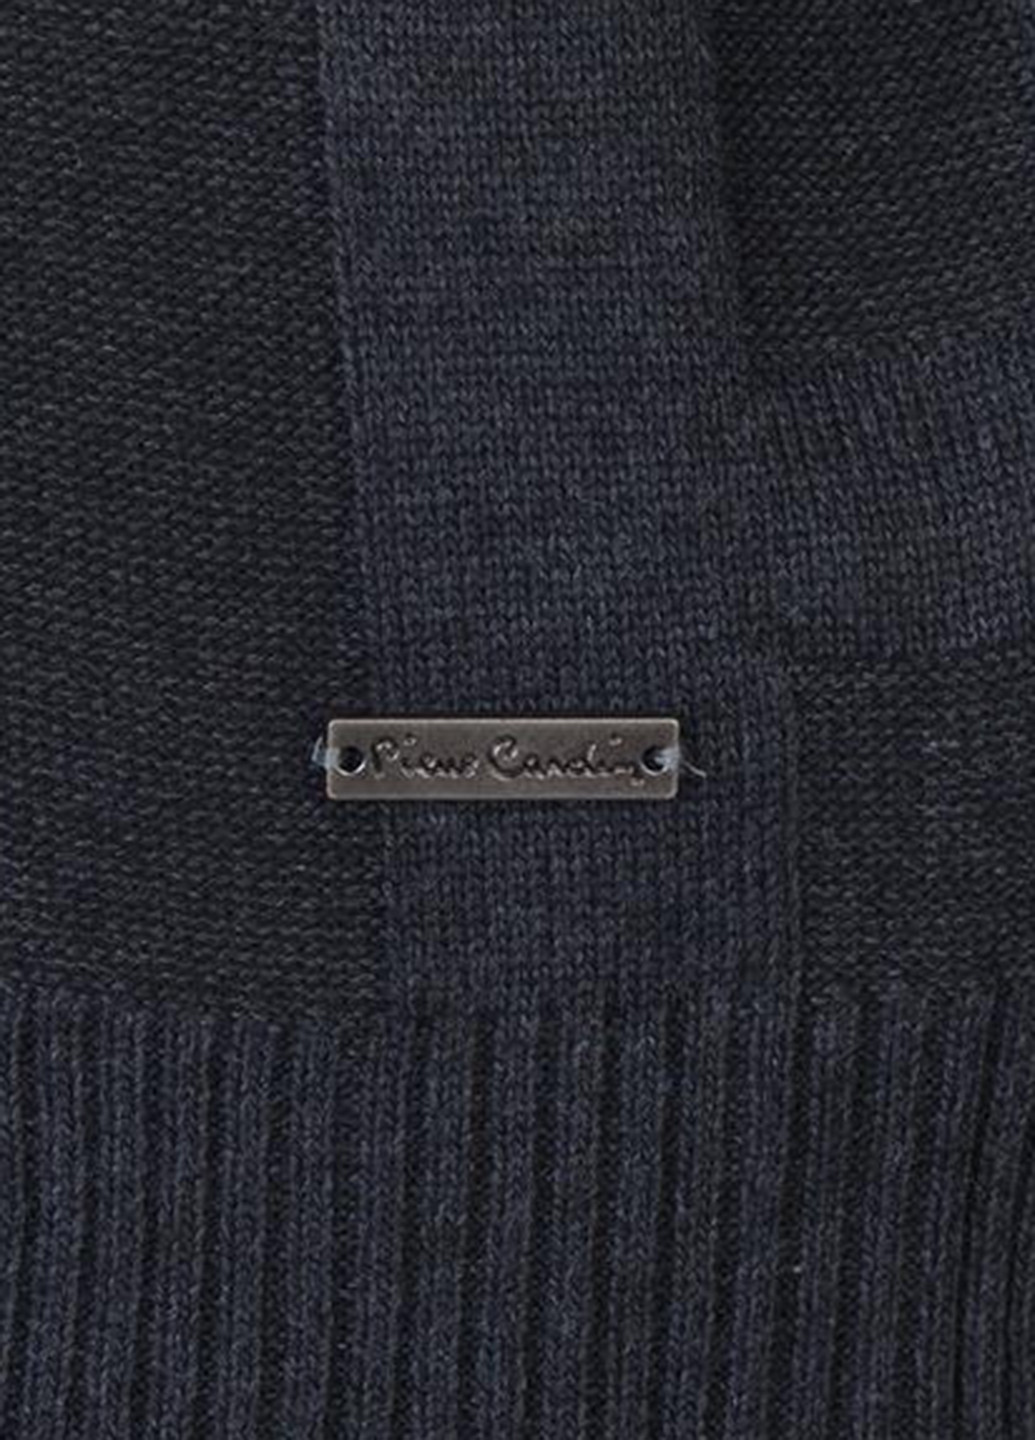 Грифельно-серый демисезонный пуловер пуловер Pierre Cardin